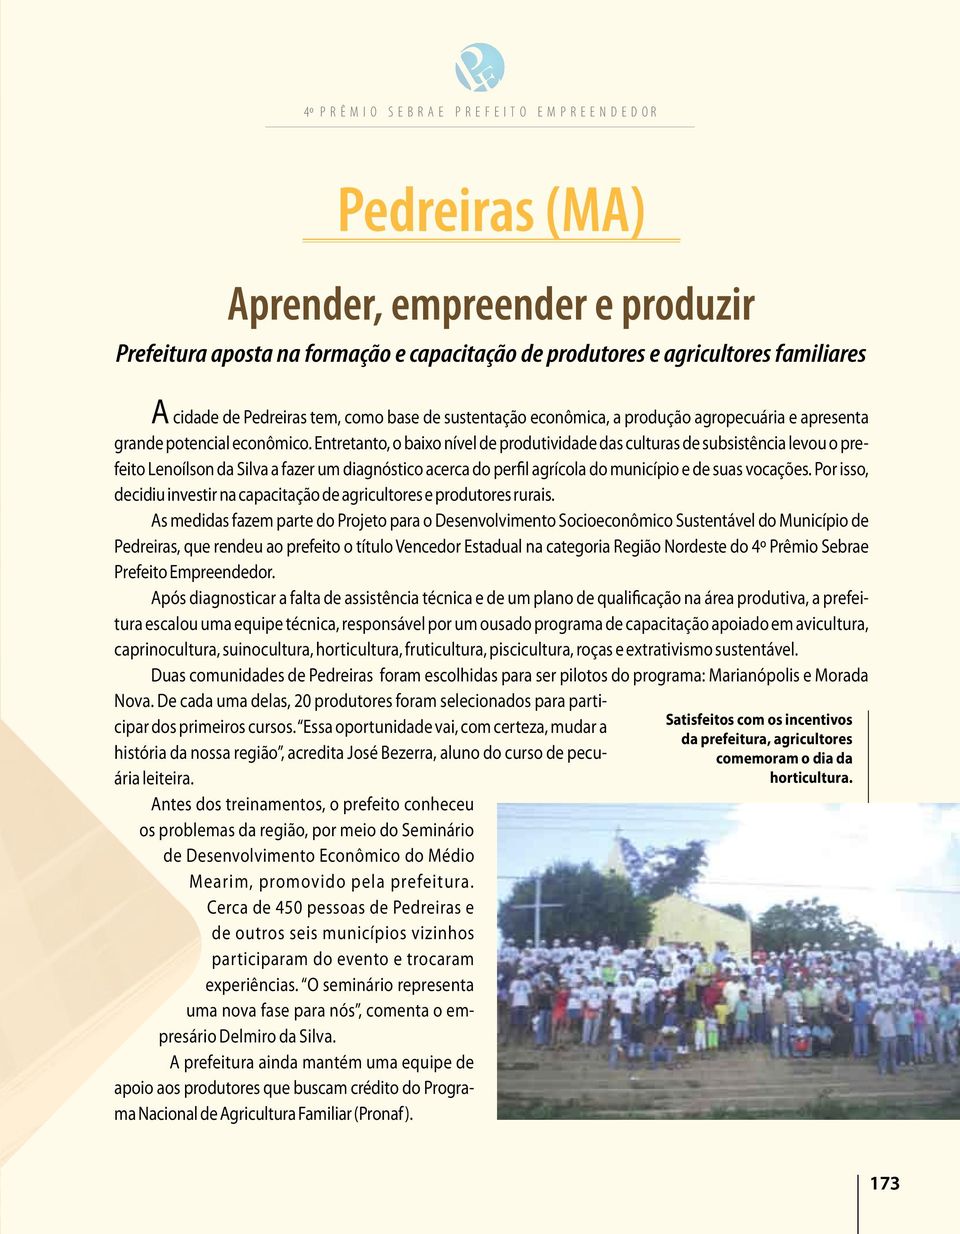 Entretanto, o baixo nível de produtividade das culturas de subsistência levou o prefeito Lenoílson da Silva a fazer um diagnóstico acerca do perfil agrícola do município e de suas vocações.